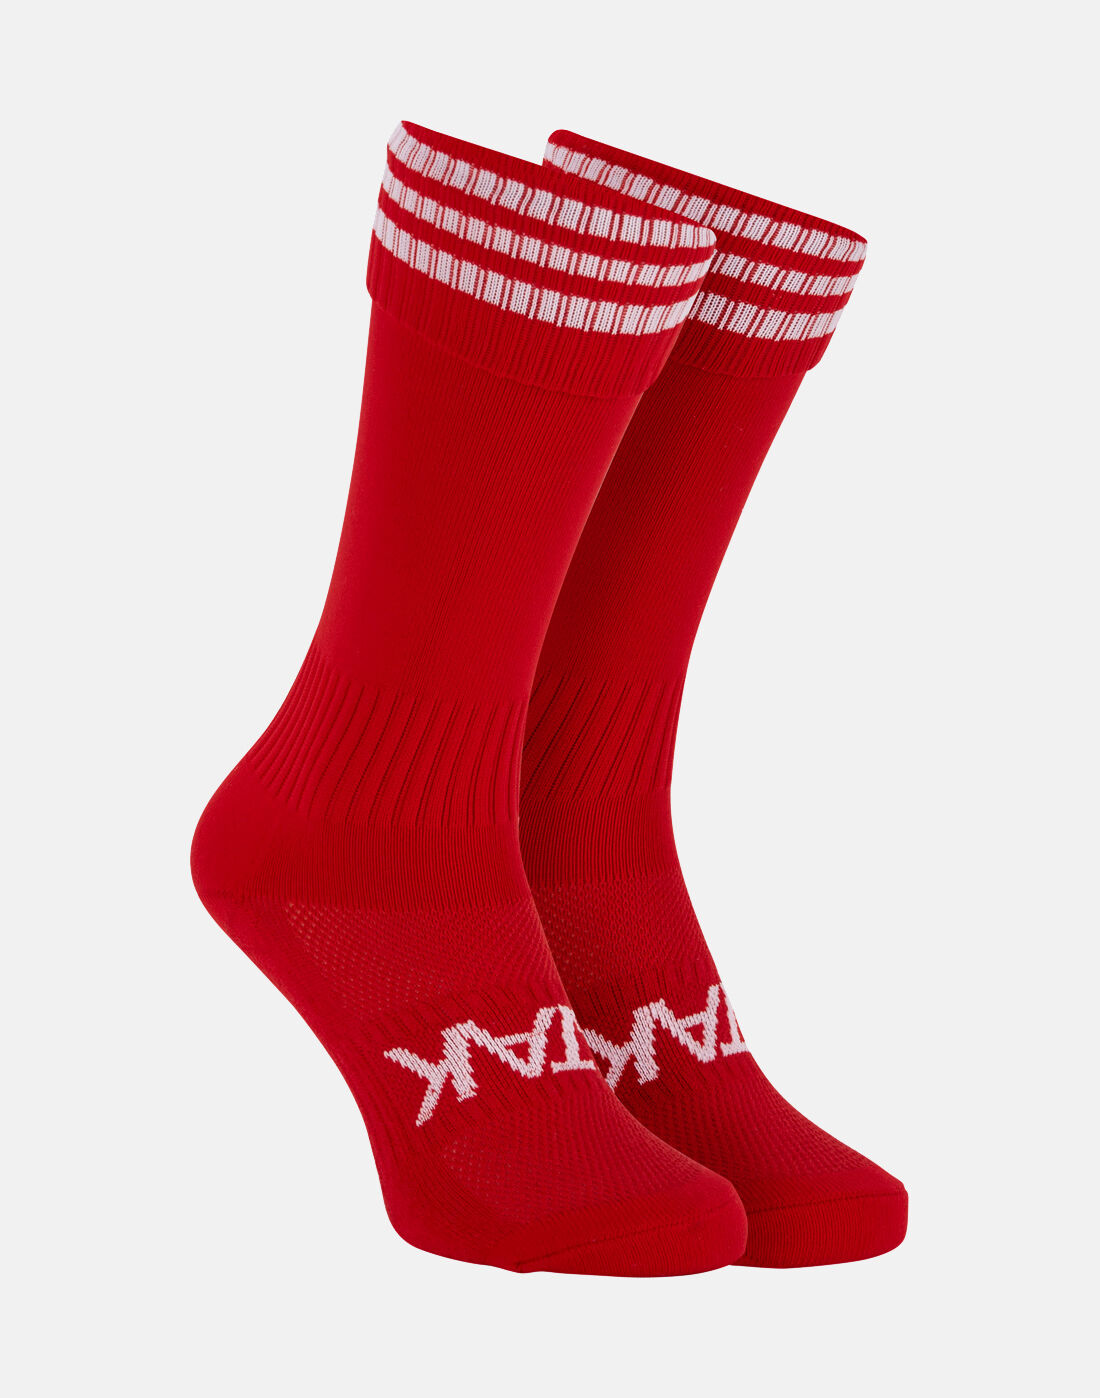 yeezy socks price